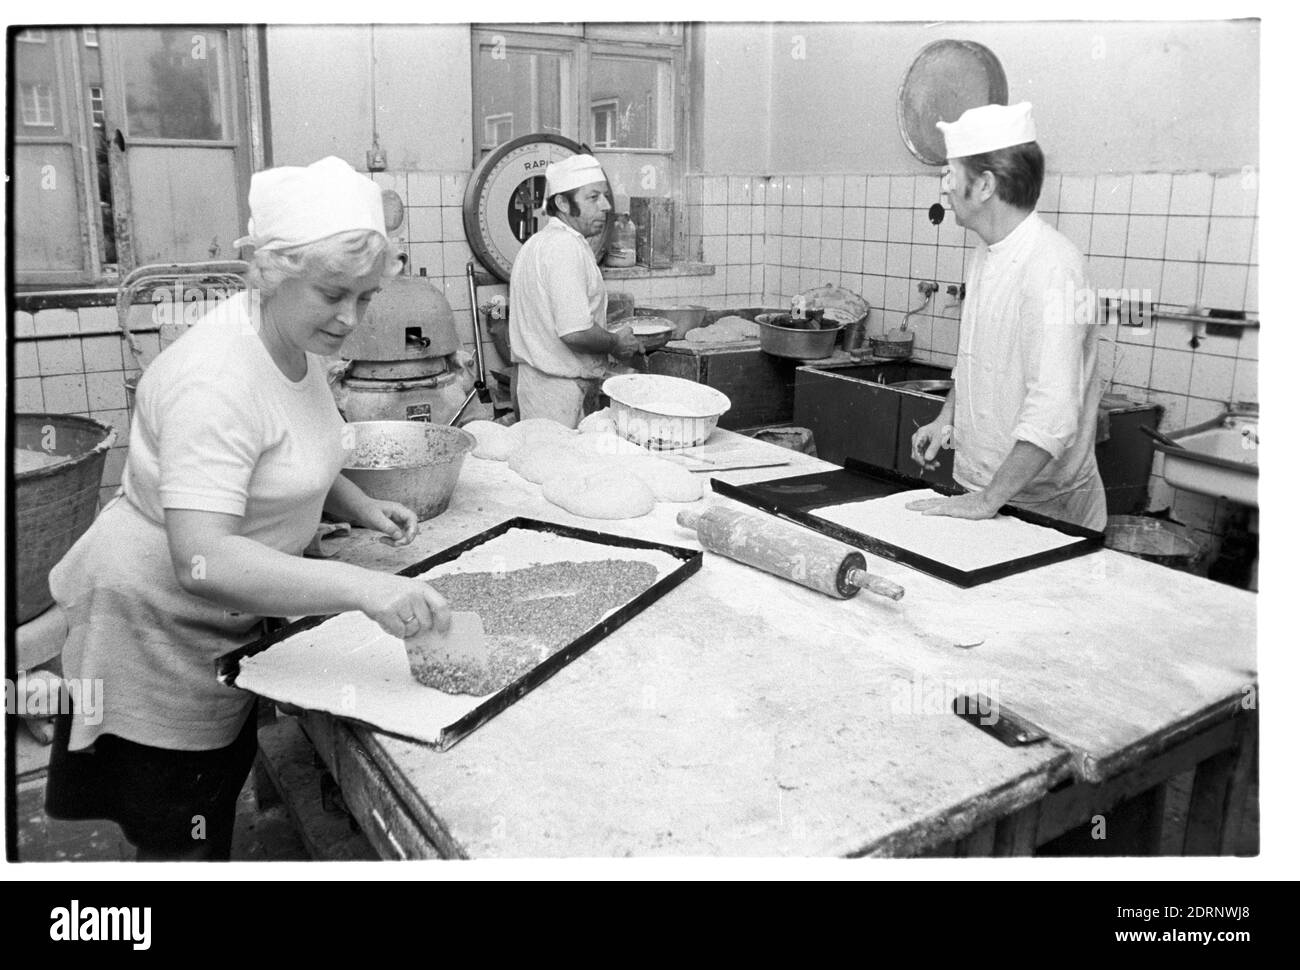 30. November 1982, Sachsen, Eilenburg: In der Konsum Bäckerei Eilenburg werden in den frühen 1980er Jahren unter anderem Kuchen gebacken. Genaues Aufnahmedatum nicht bekannt. Foto: Volkmar Heinz/dpa-Zentralbild/ZB Stockfoto